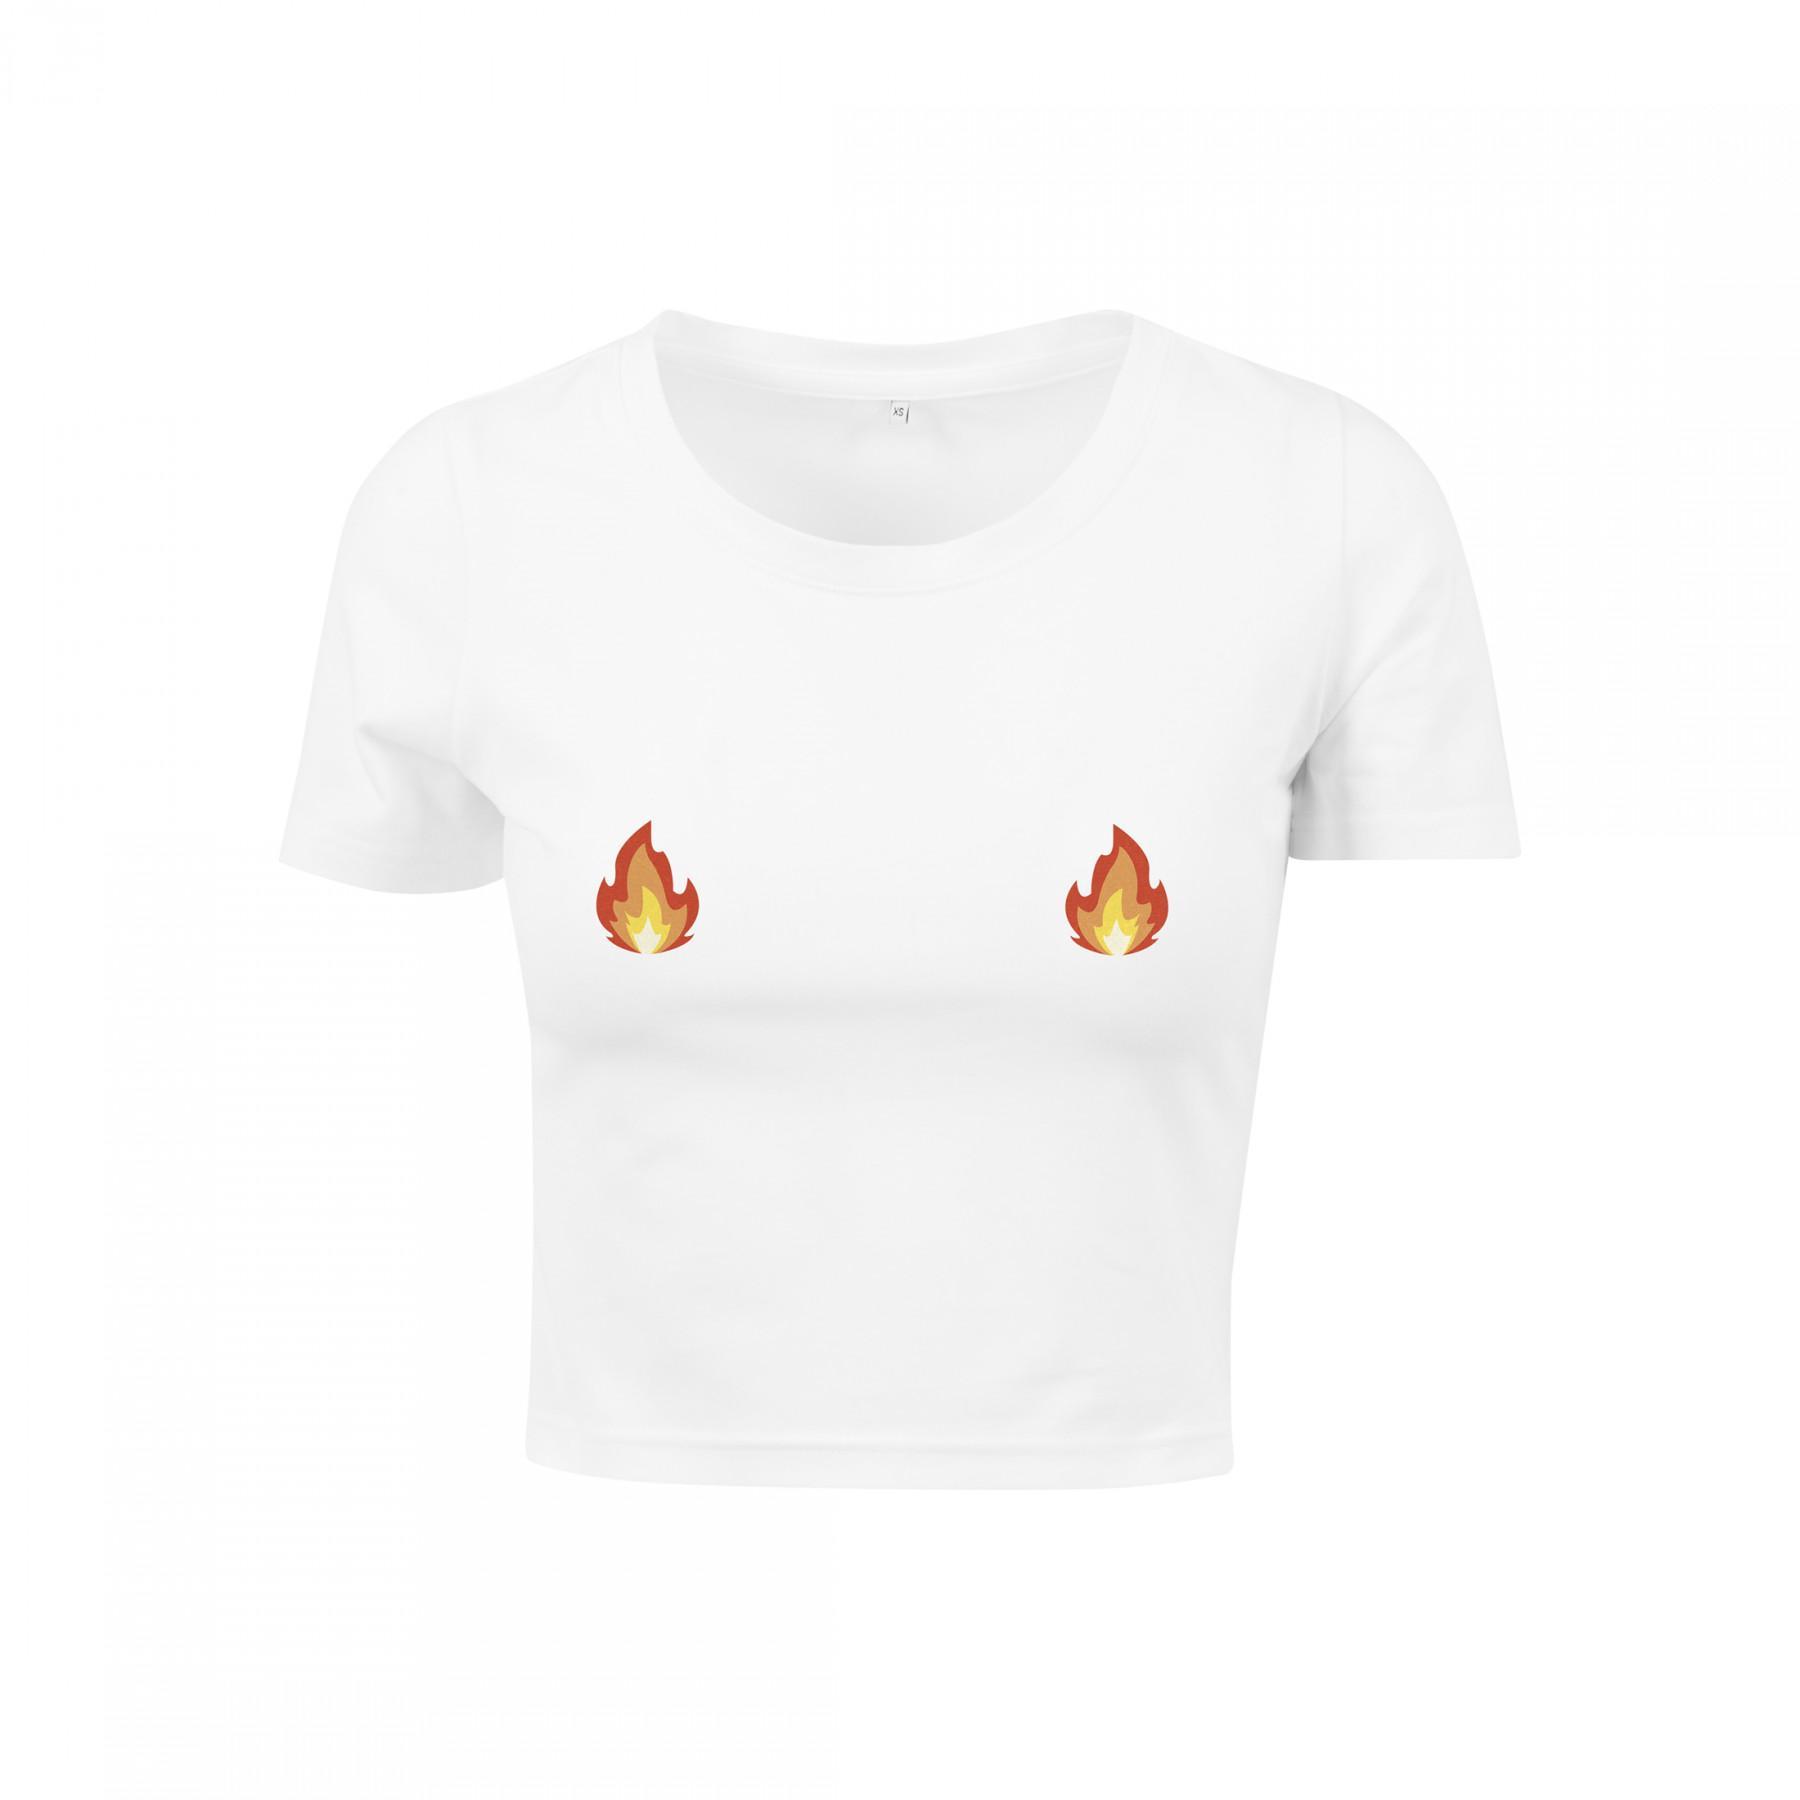 Women's T-shirt Mister Tee flames